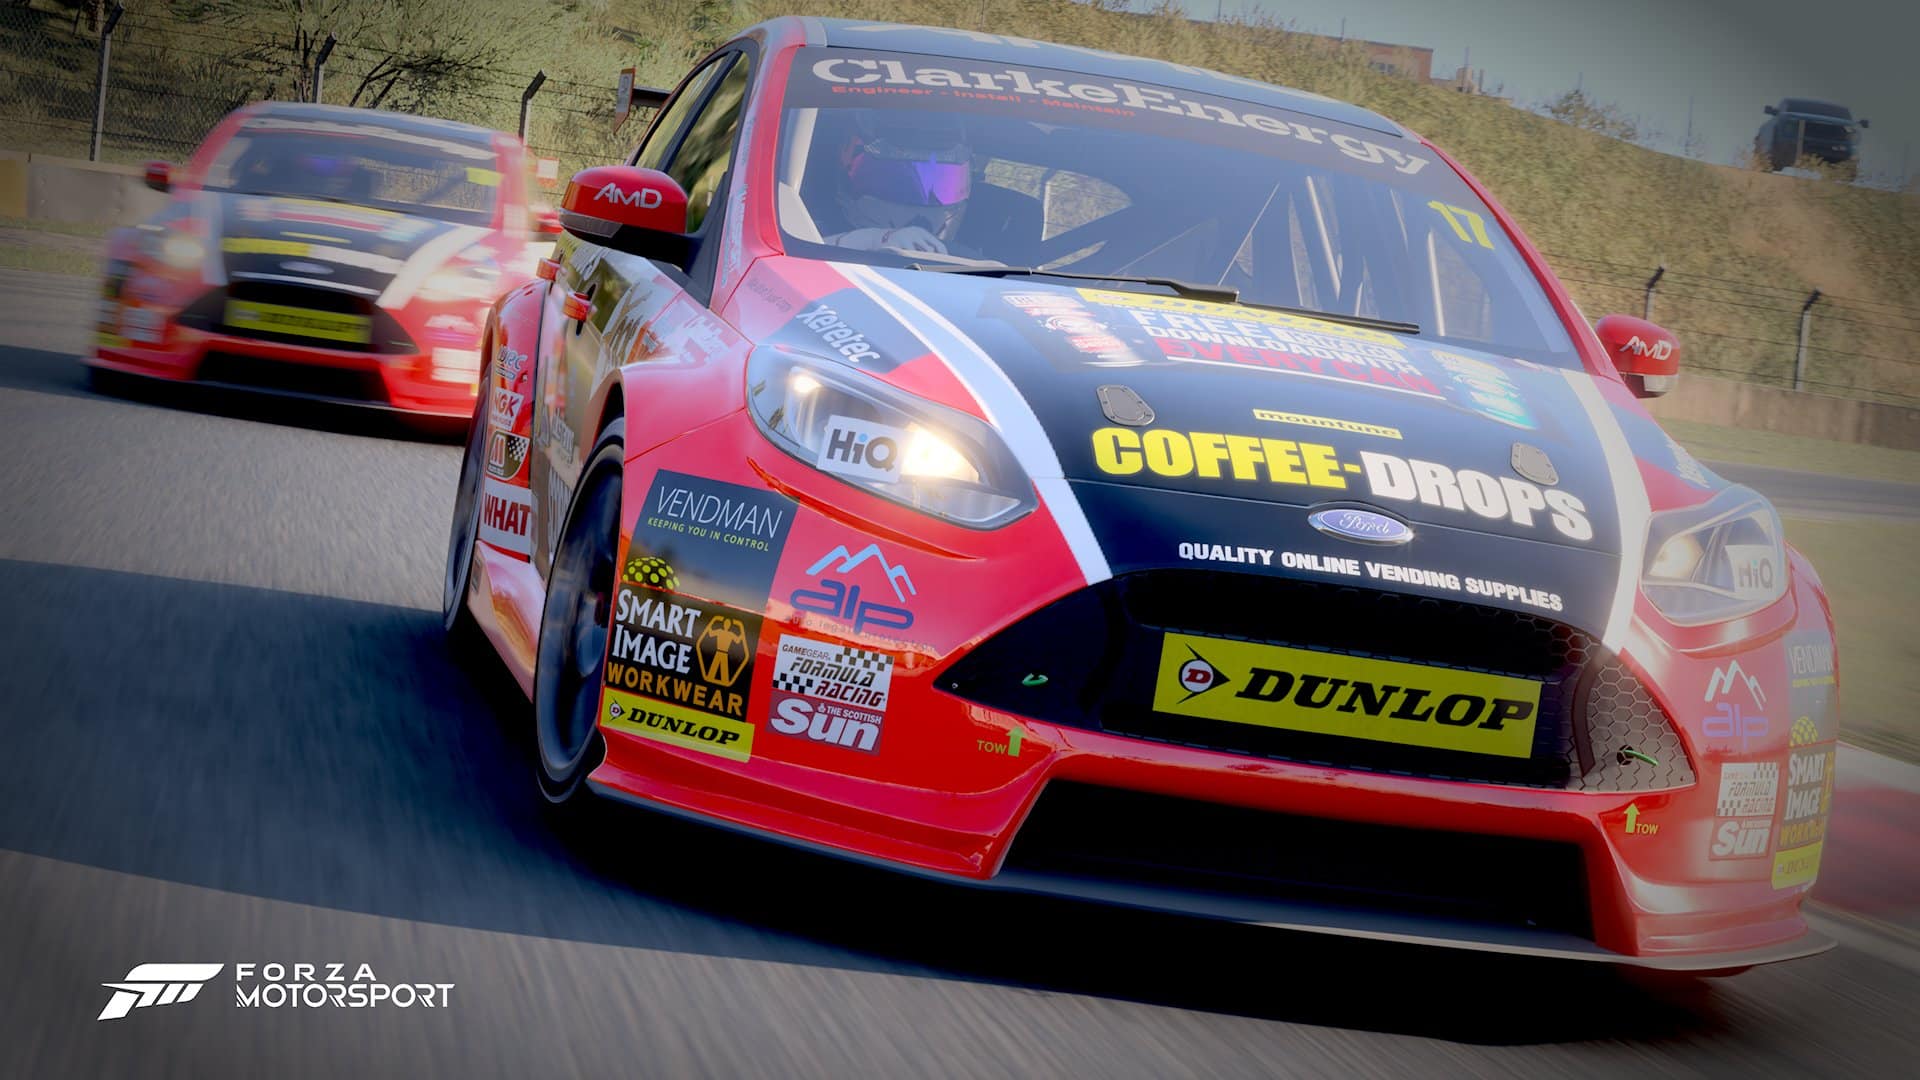 WATCH: Forza Motorsport 8 trailer drops 